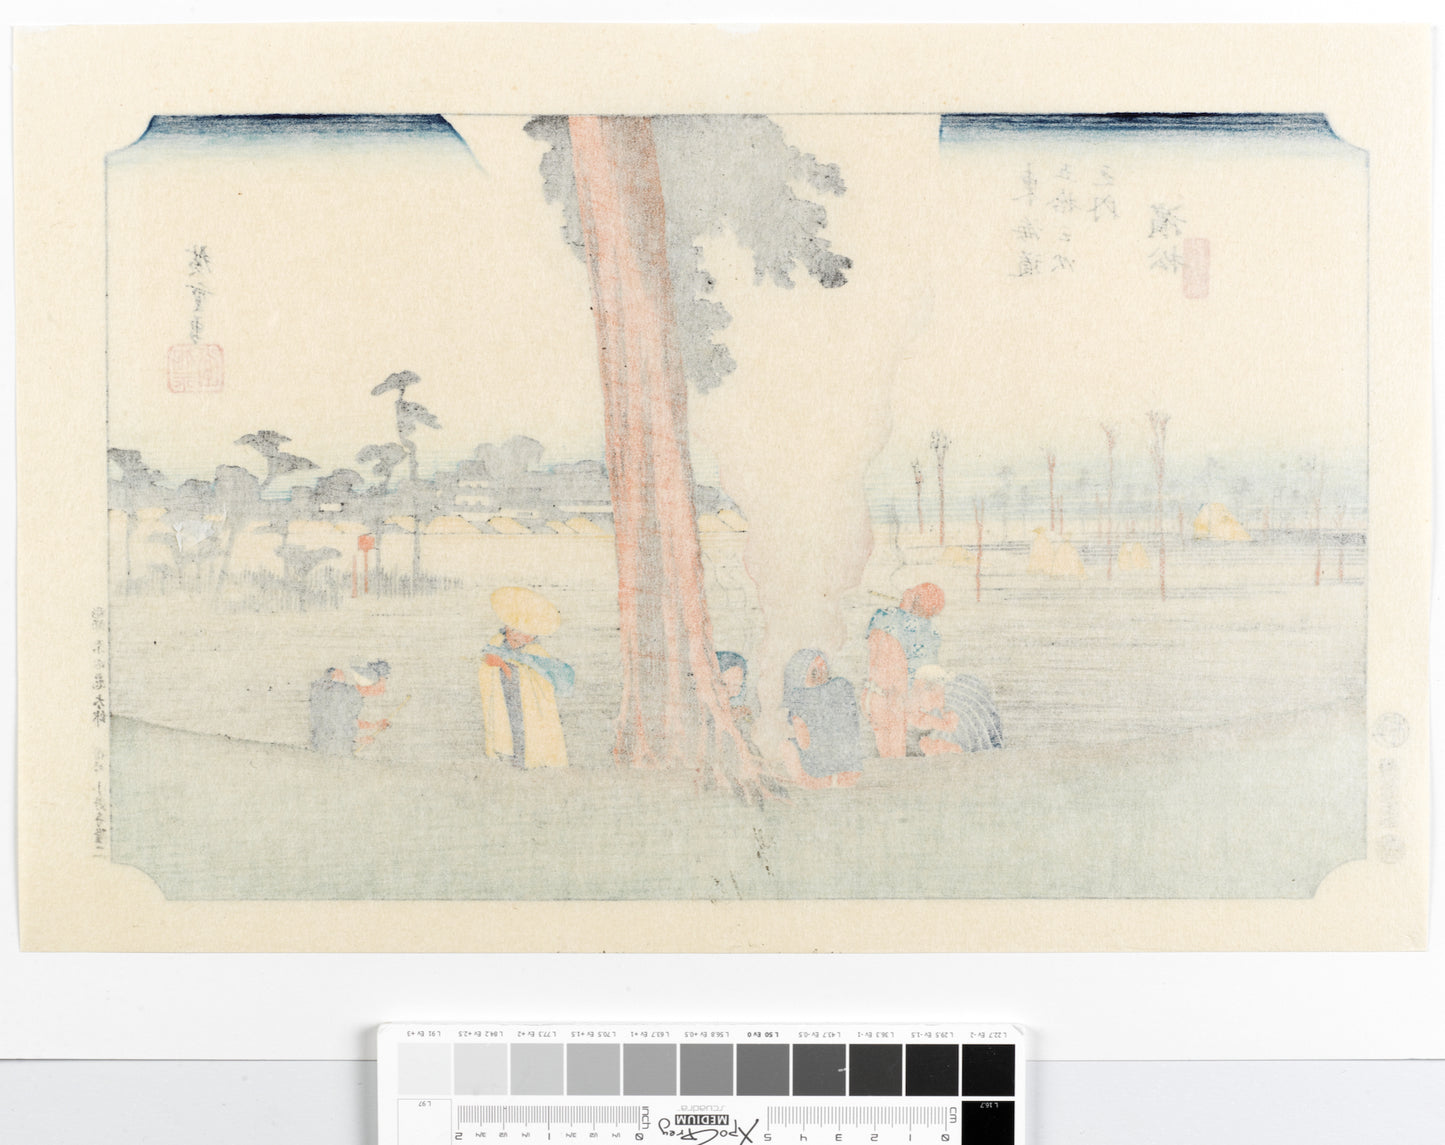 estampe japonaise de hiroshige grand tokaido des voyageurs font halte sous un pin, dos estampe